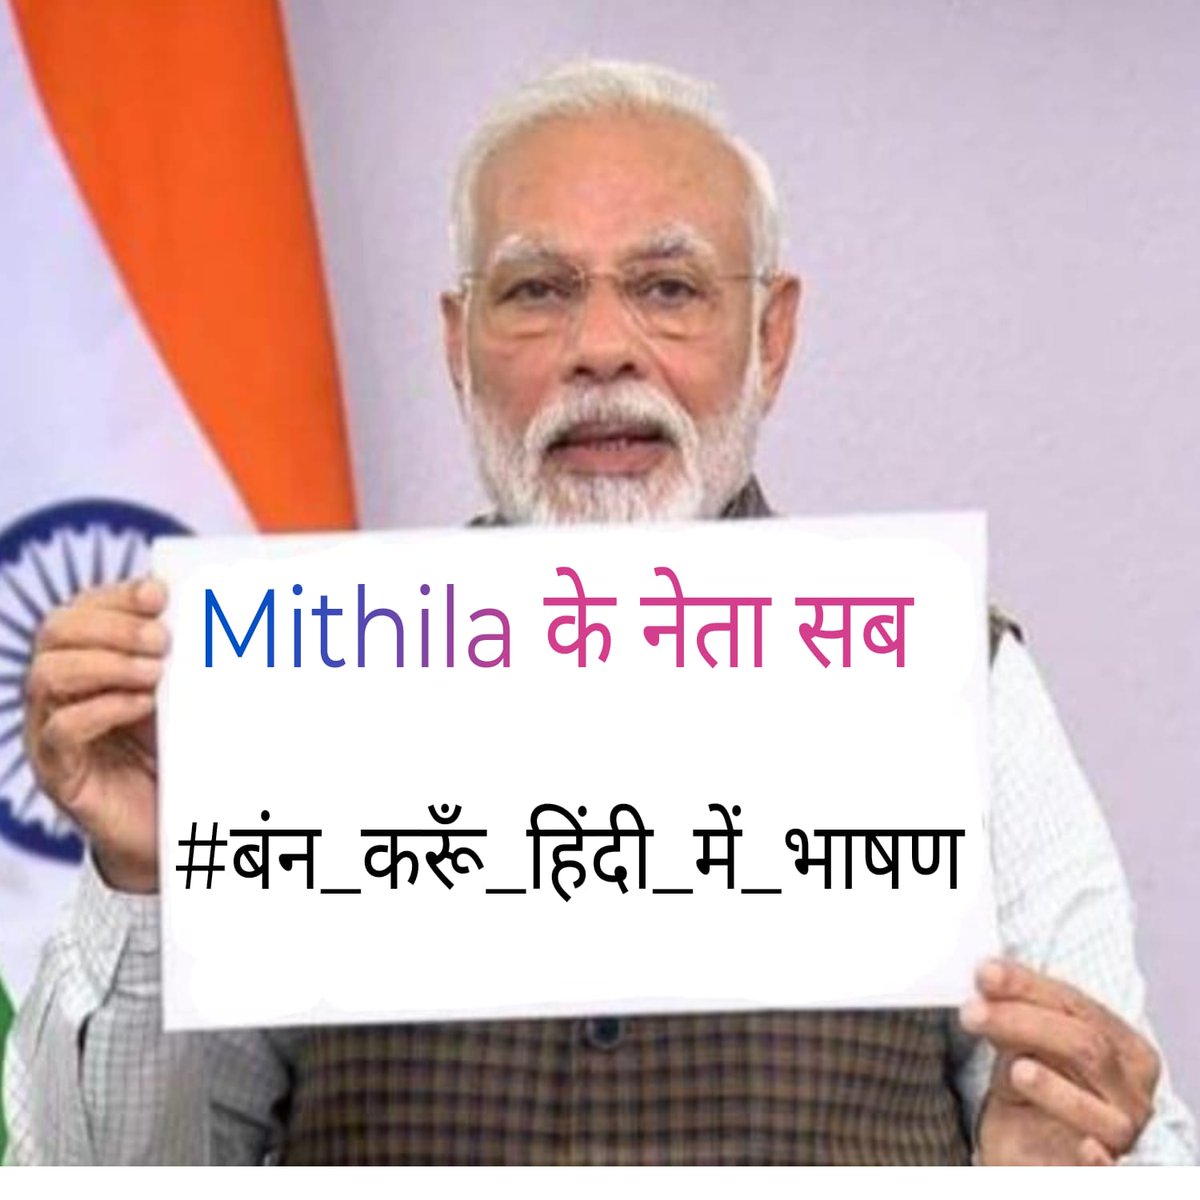 मिथिला के सम्मान 'मैथिली' मैथिल के सम्मान 'मैथिली' #बंन_करूँ_हिंदी_में_भाषण #Stop_Speech_In_Hindi